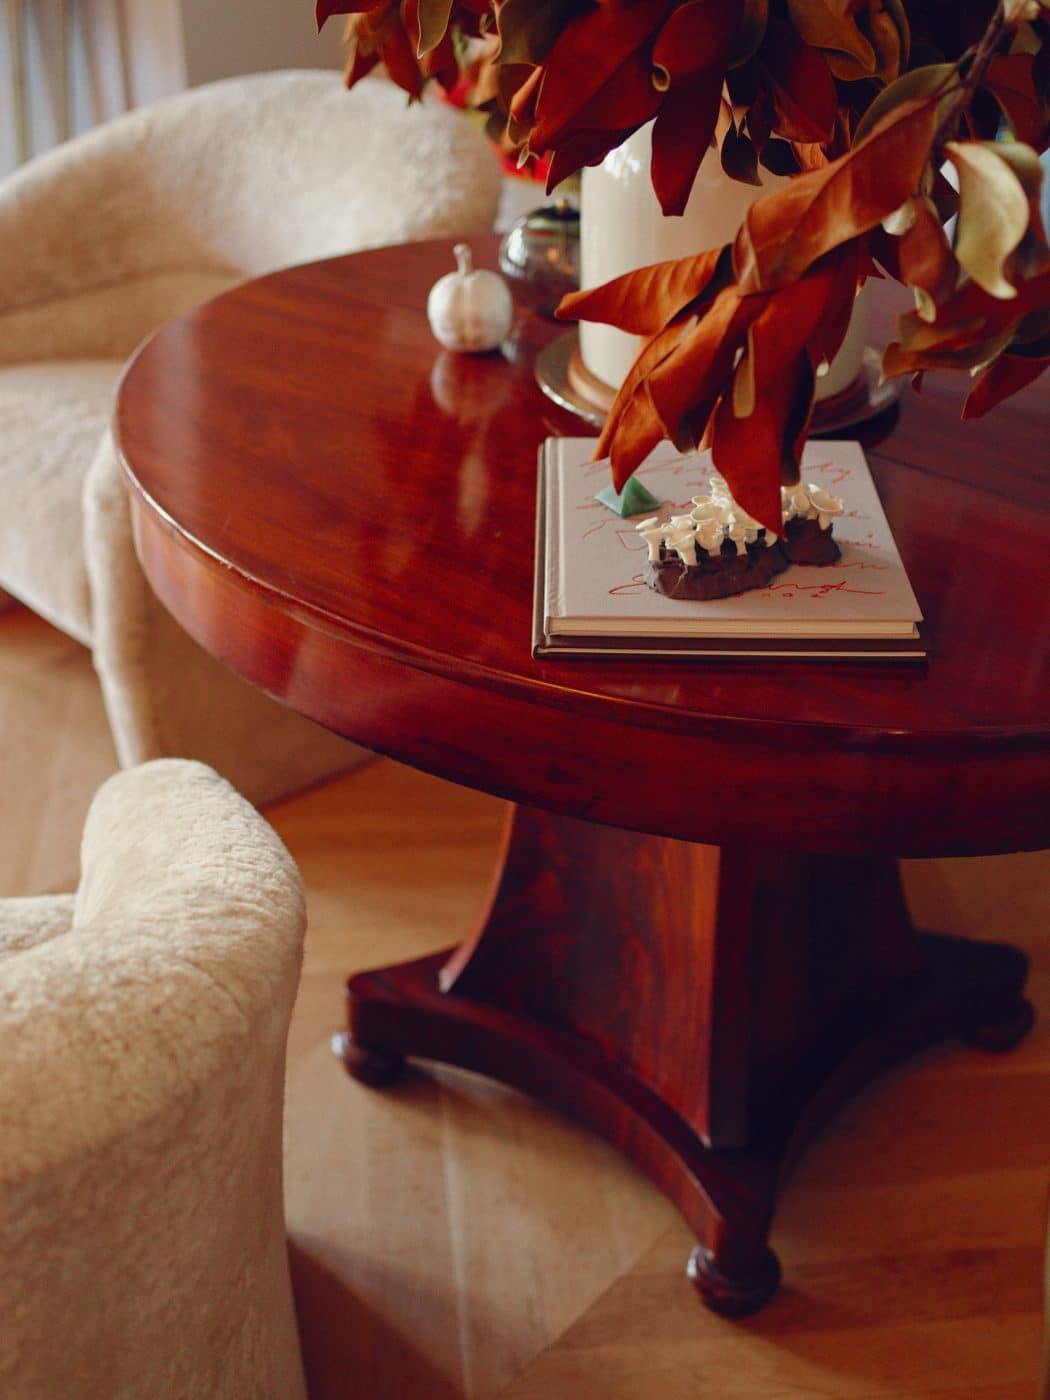 The mahogany dining table in Jenna Lyons' Soho loft